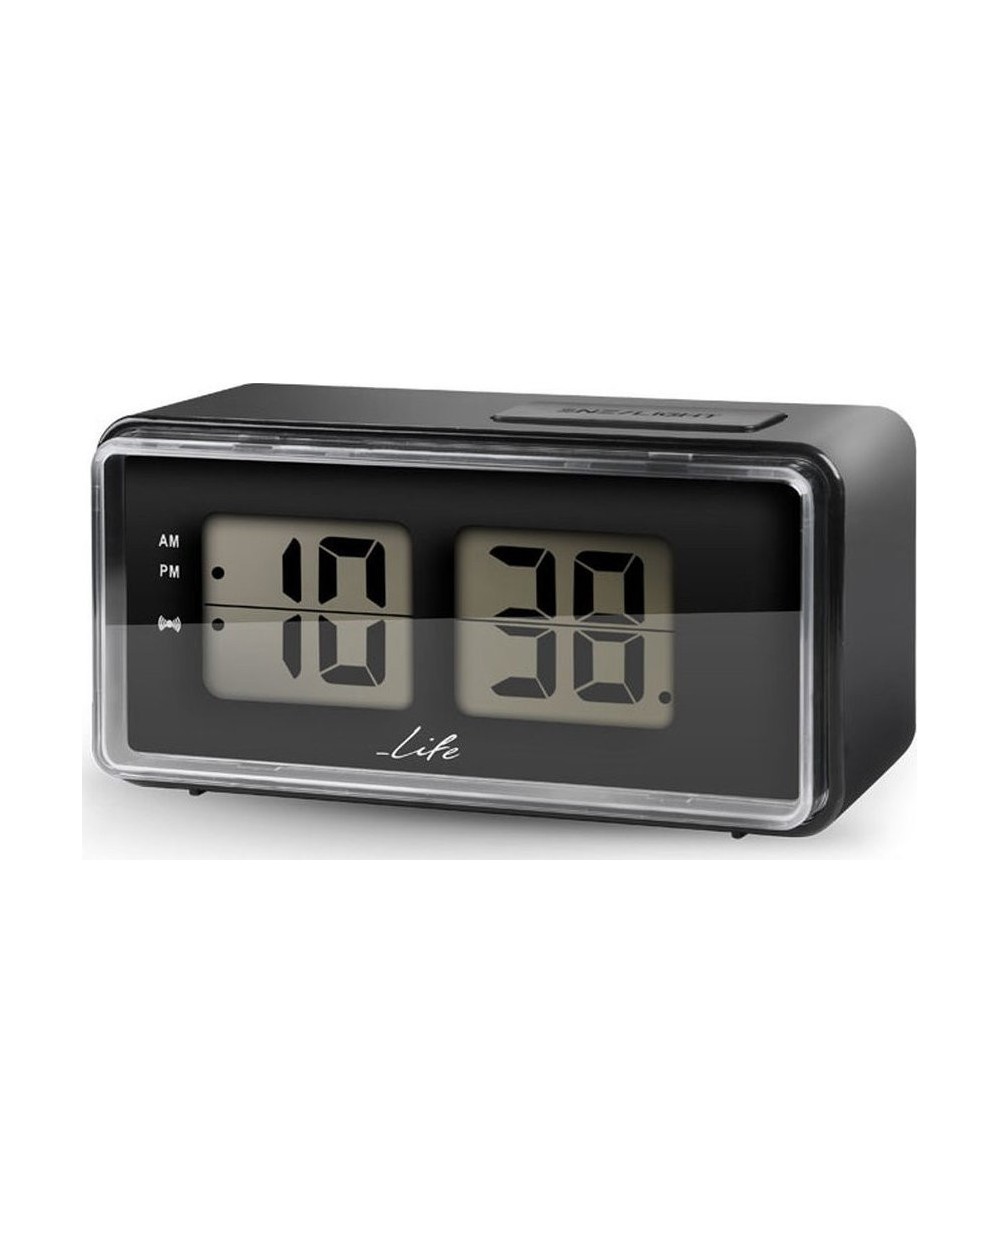 Ψηφιακό ρολόι / ξυπνητήρι με οθόνη LCD και retro flip design LIFE ACL-100